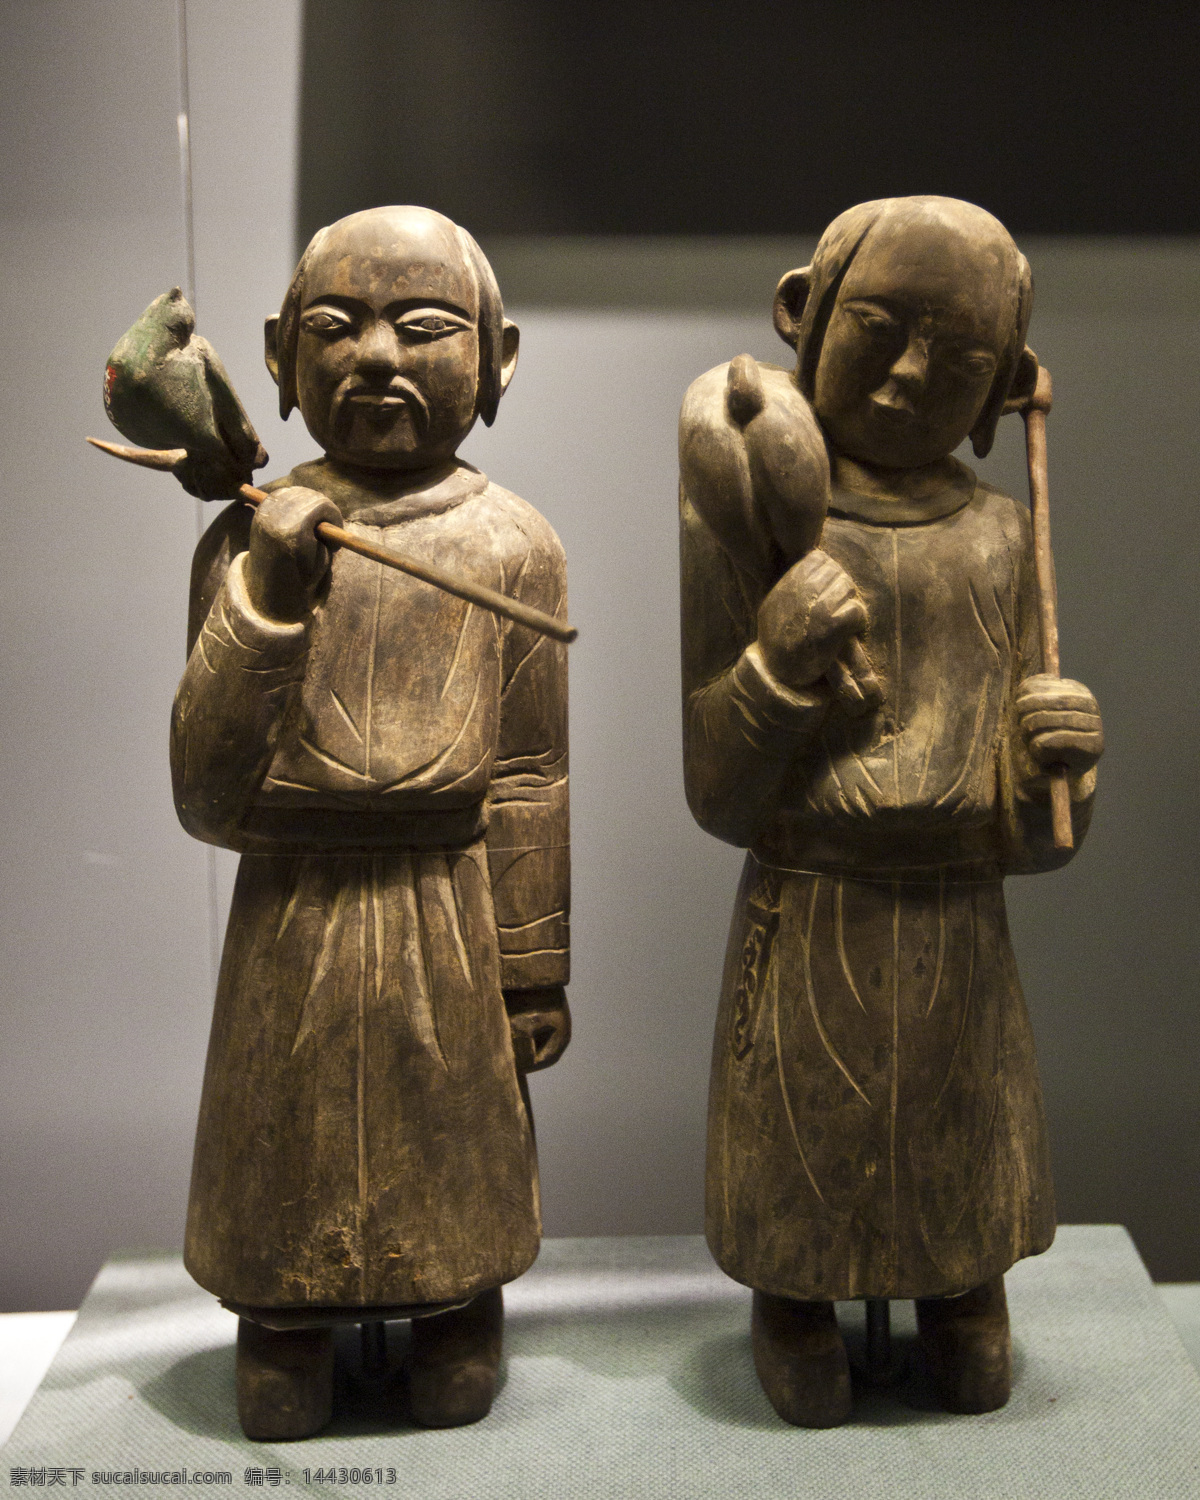 契丹 渔猎 木立 俑 木俑 文物 收藏 首都 博物馆 造像艺术 雕塑 建筑园林